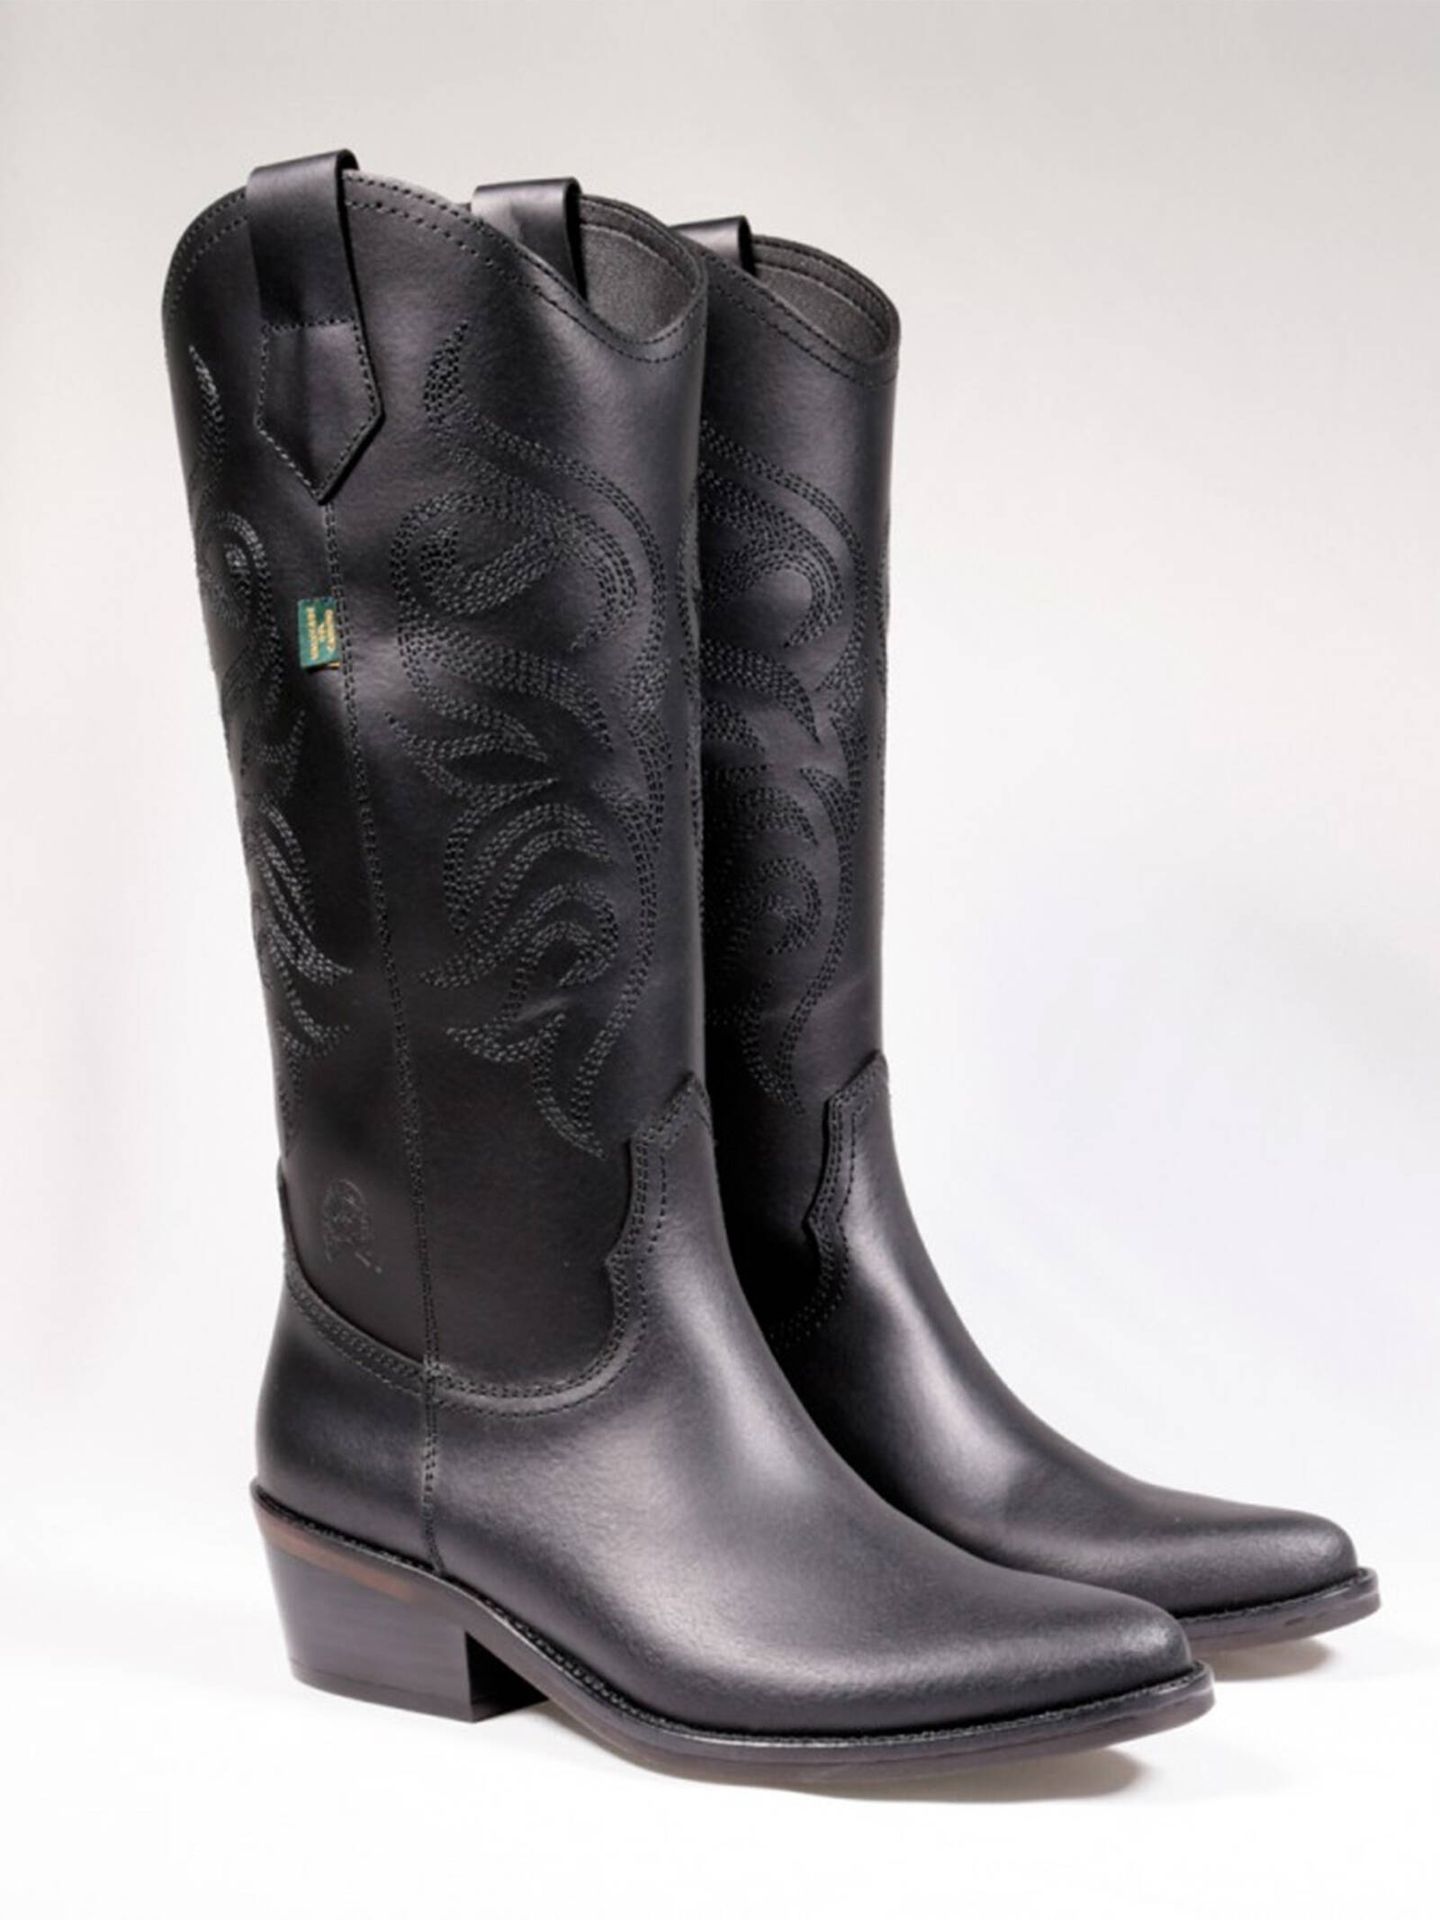 Botas camperas negras de Dakota Boots, una de las tendencias de la temporada. (Cortesía)